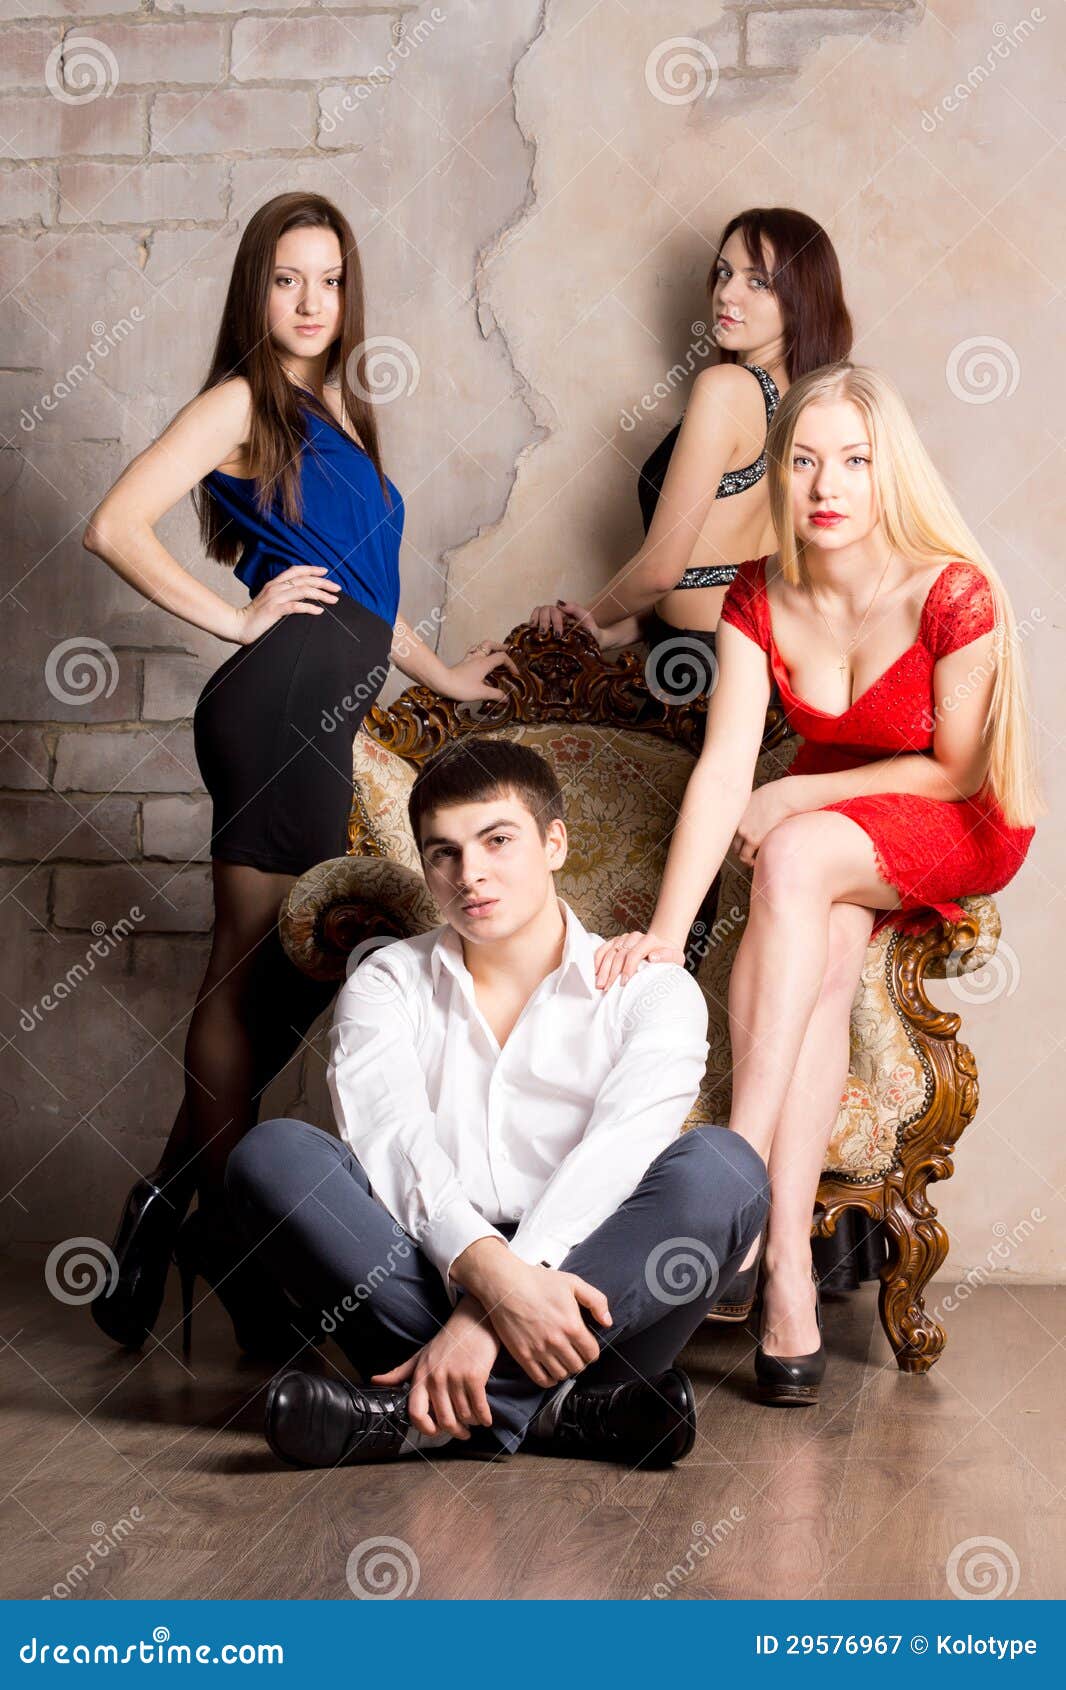 Включи 2 мужчины 1 женщина. Девушка в окружении мужчин. Фотосессия 3 женщины. Мужчина сидит в окружении девушек. Мужчина и 3 женщины.